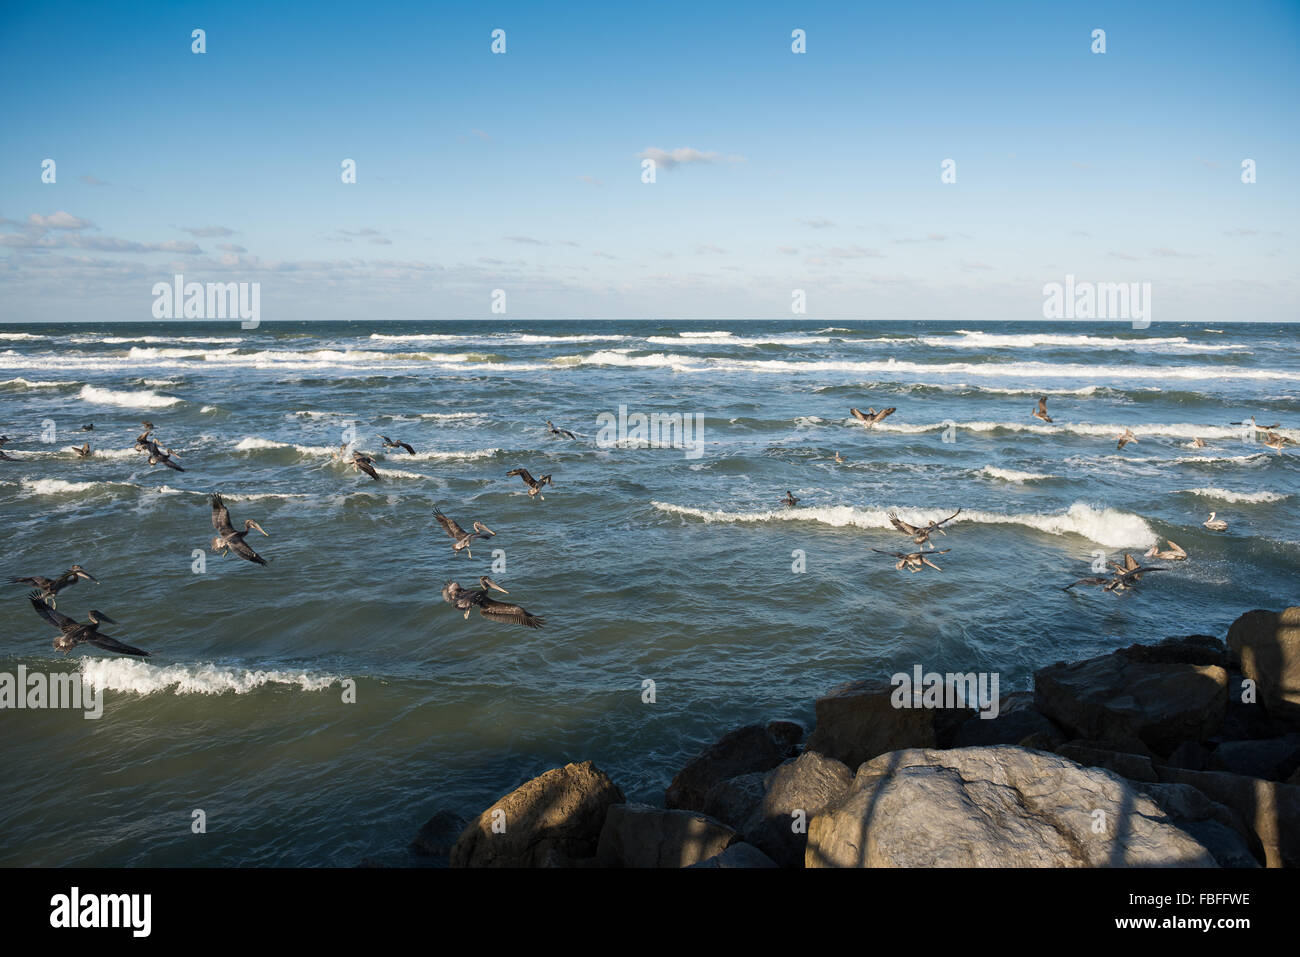 Un troupeau de pélicans bruns débarquant sur les vagues de l'océan Atlantique près de la jetée en pierre du parc Ponce Inlet Lighthouse point, Daytona Beach, Floride, États-Unis. Banque D'Images